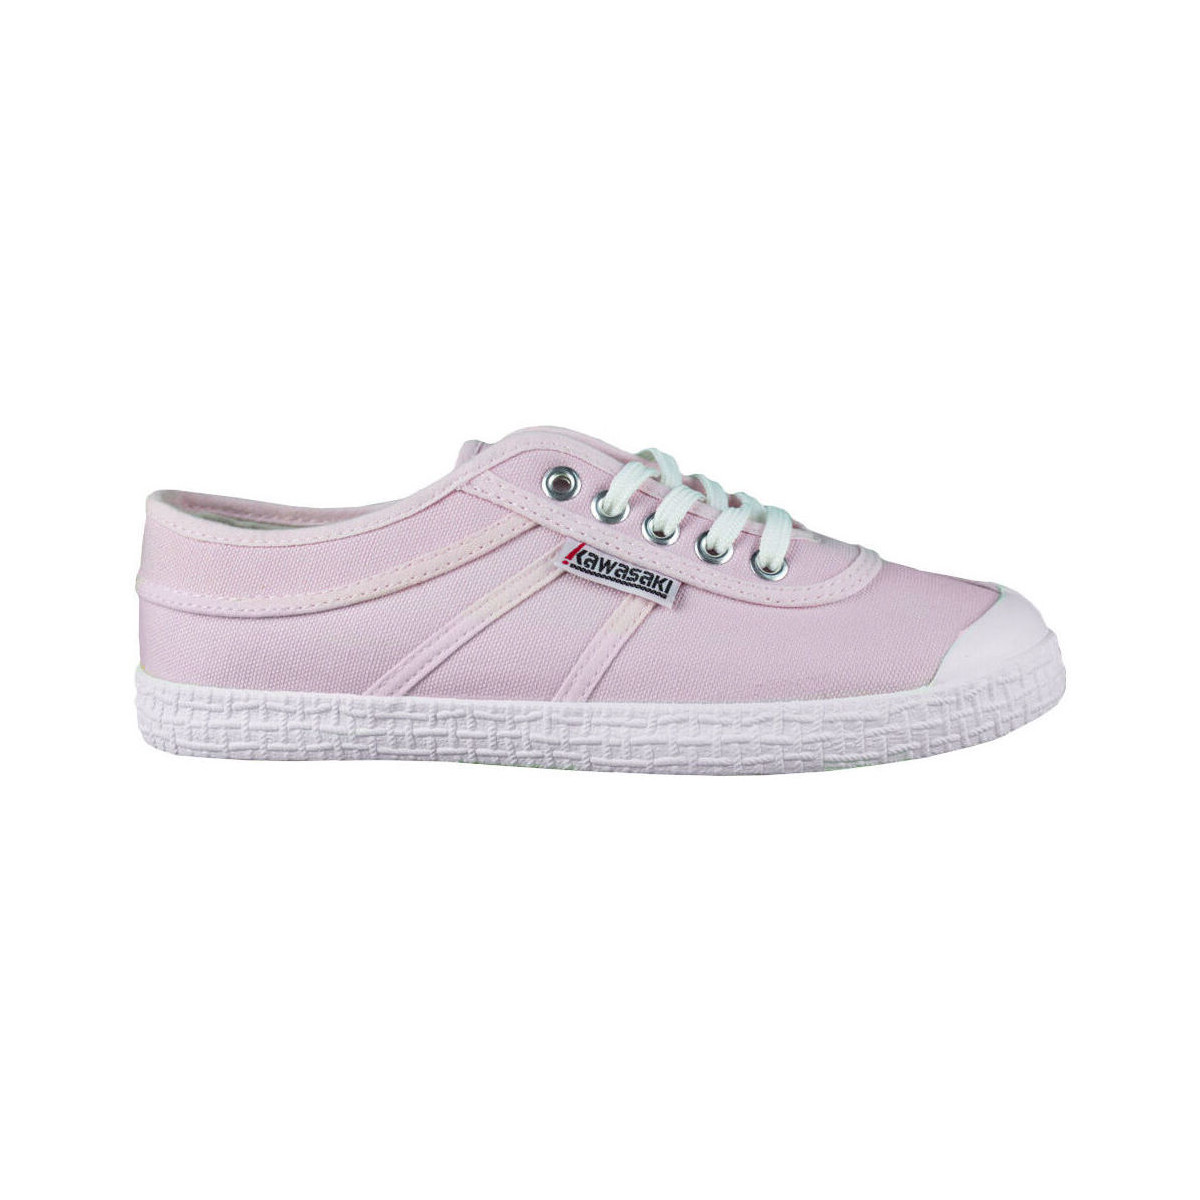 Topánky Žena Módne tenisky Kawasaki Original Canvas Shoe K192495 4046 Candy Pink Ružová